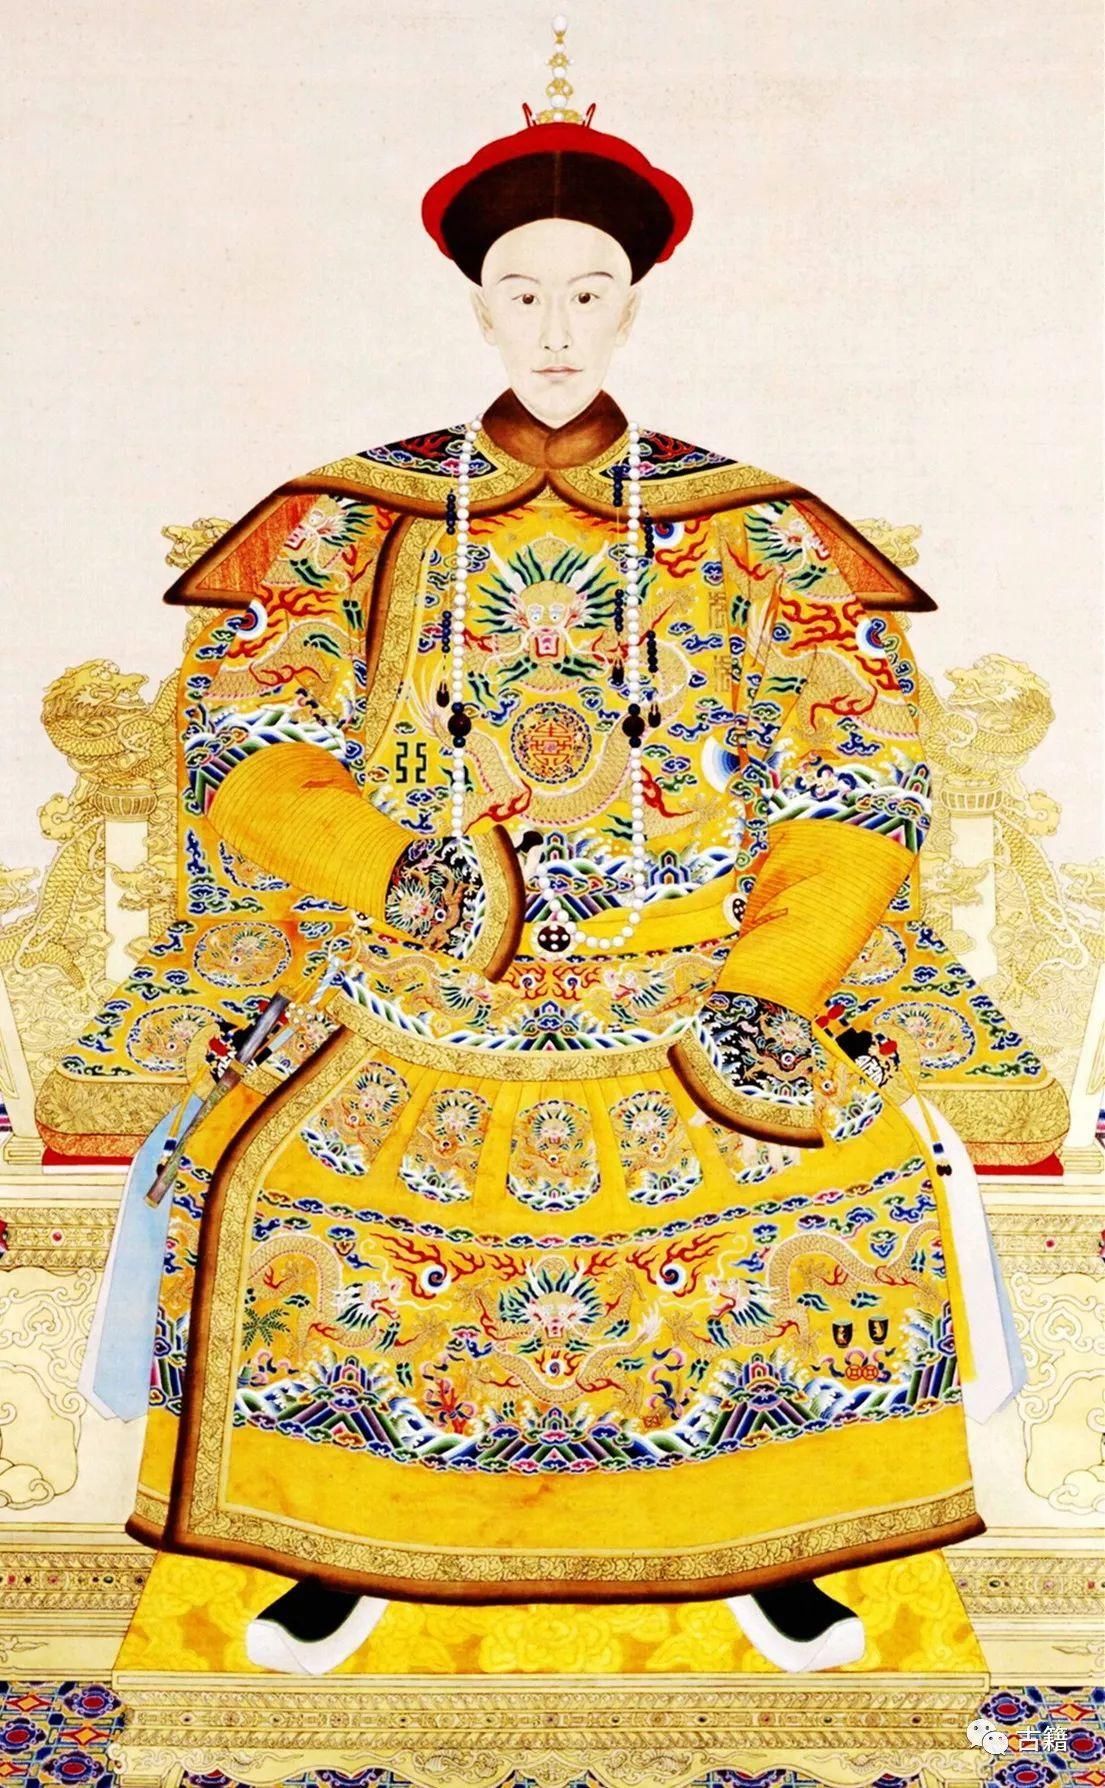 清朝历代皇帝画像